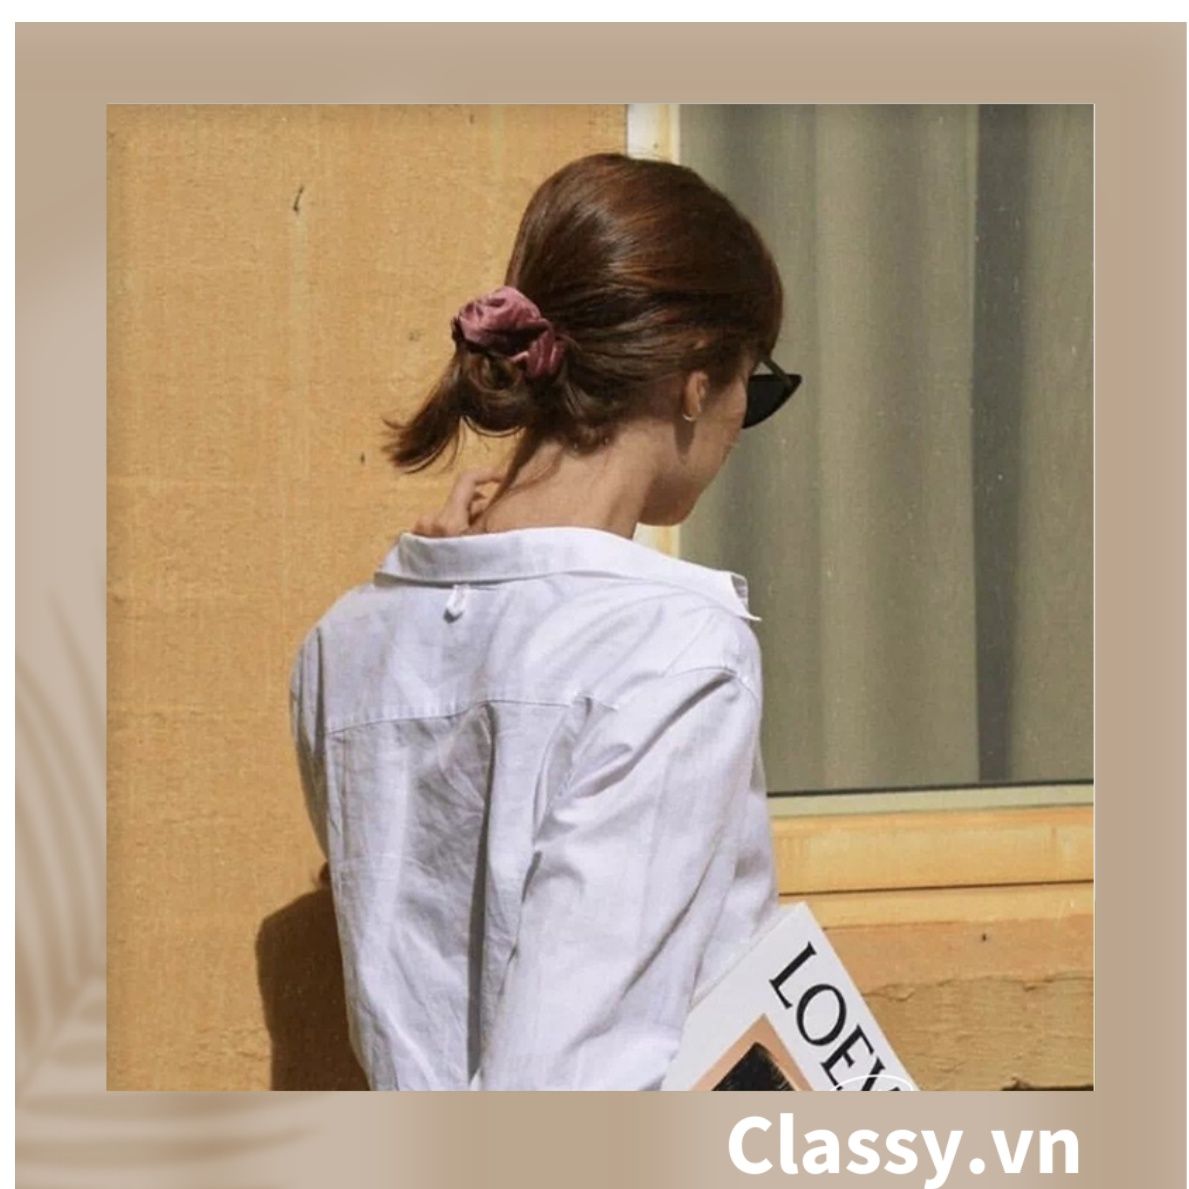  Classy Scrunchies, dây cột tóc vải nhung mịn màng, phong cách hàn quốc PK1588 